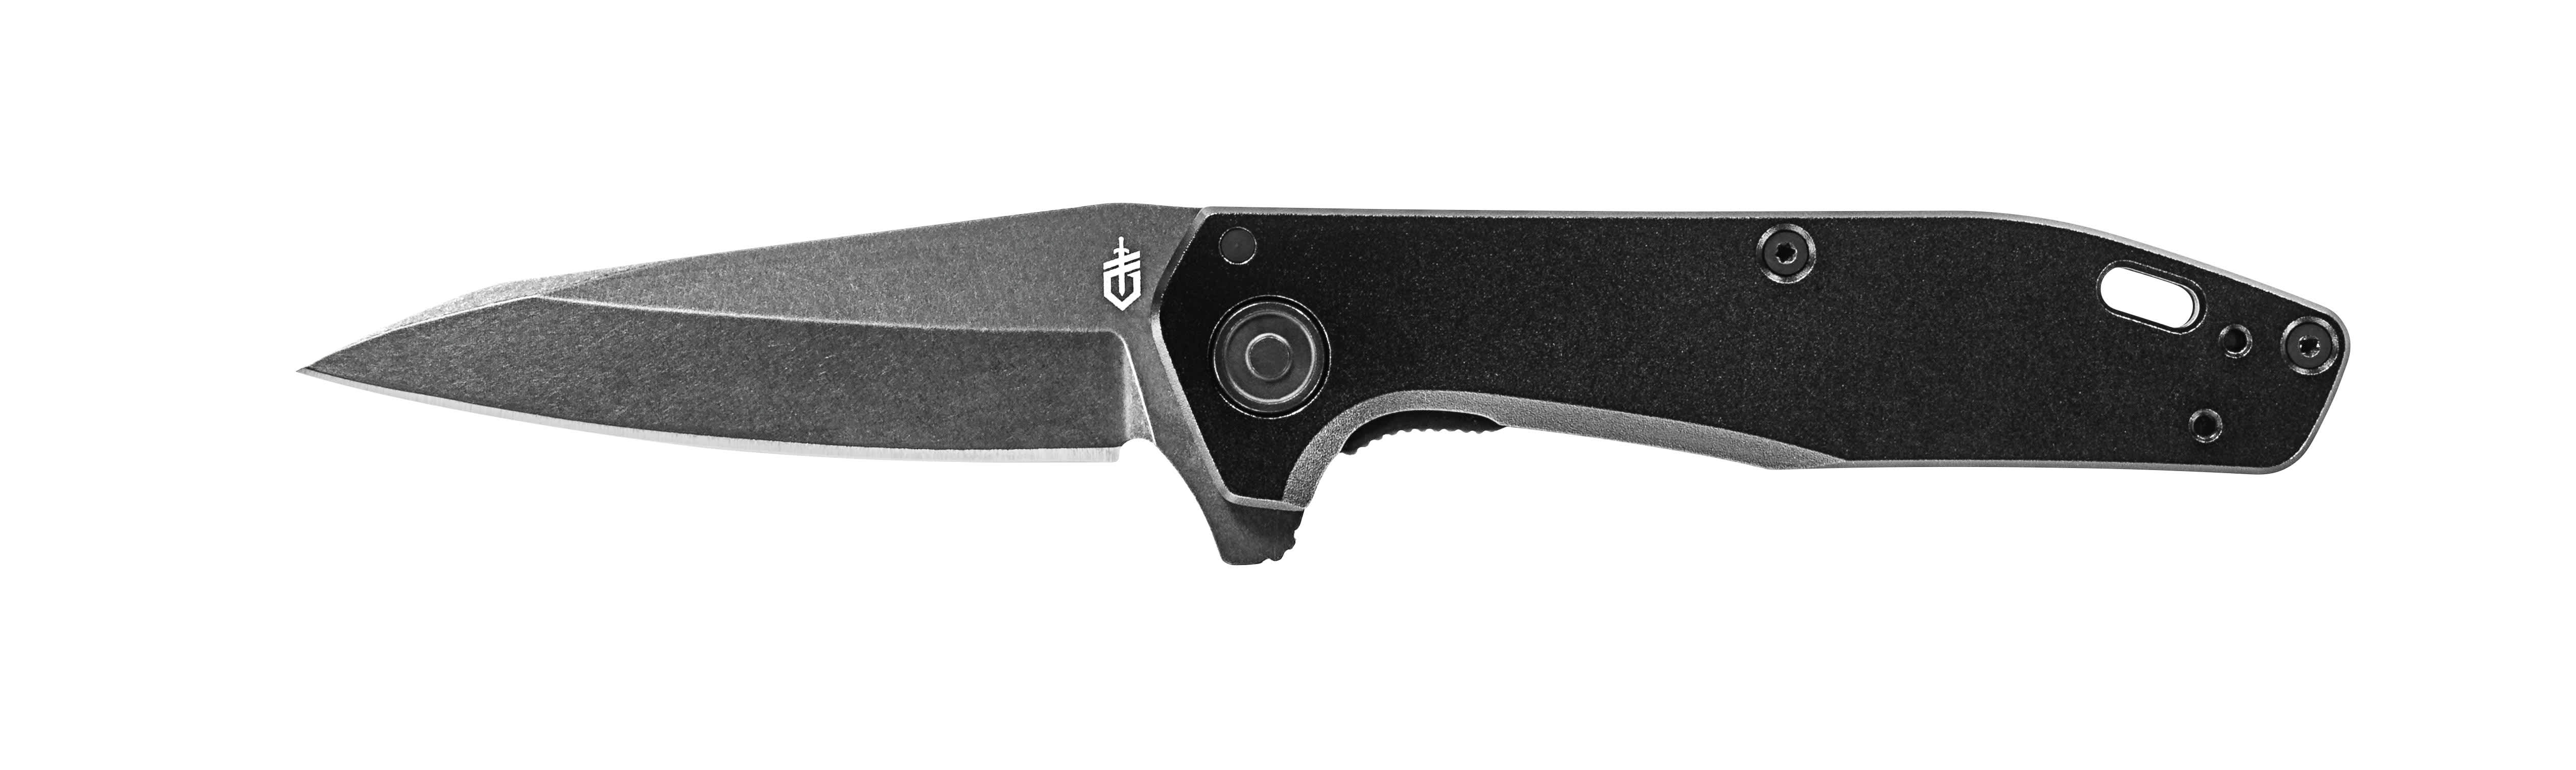 Gerber® Fastball Black Folding Knife